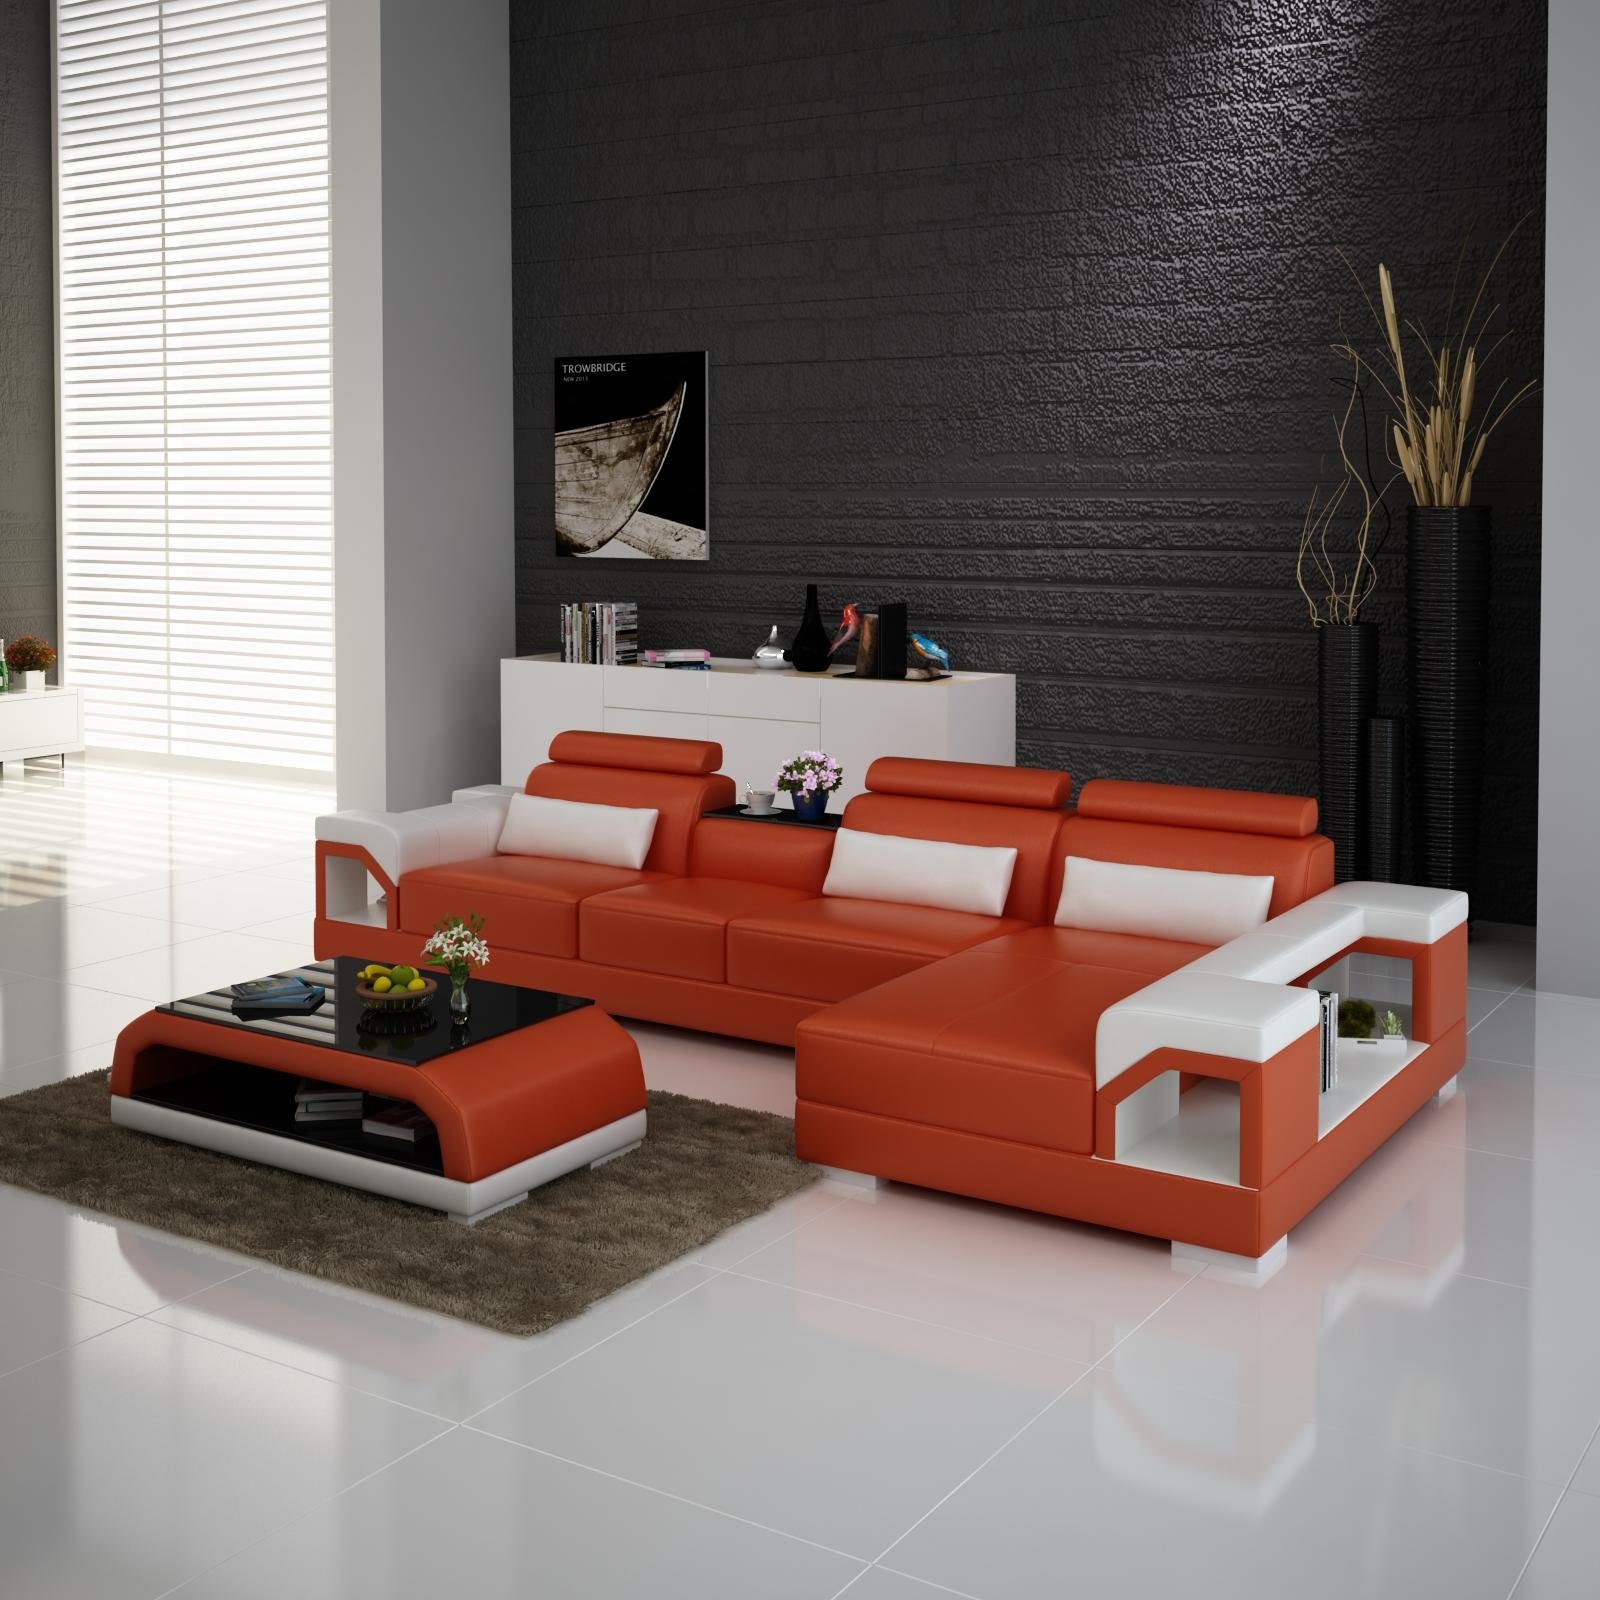 Ecksofa Wohnlandschaft Design Couch Ecksofa, Orange/Weiß Garnitur Modern JVmoebel Leder